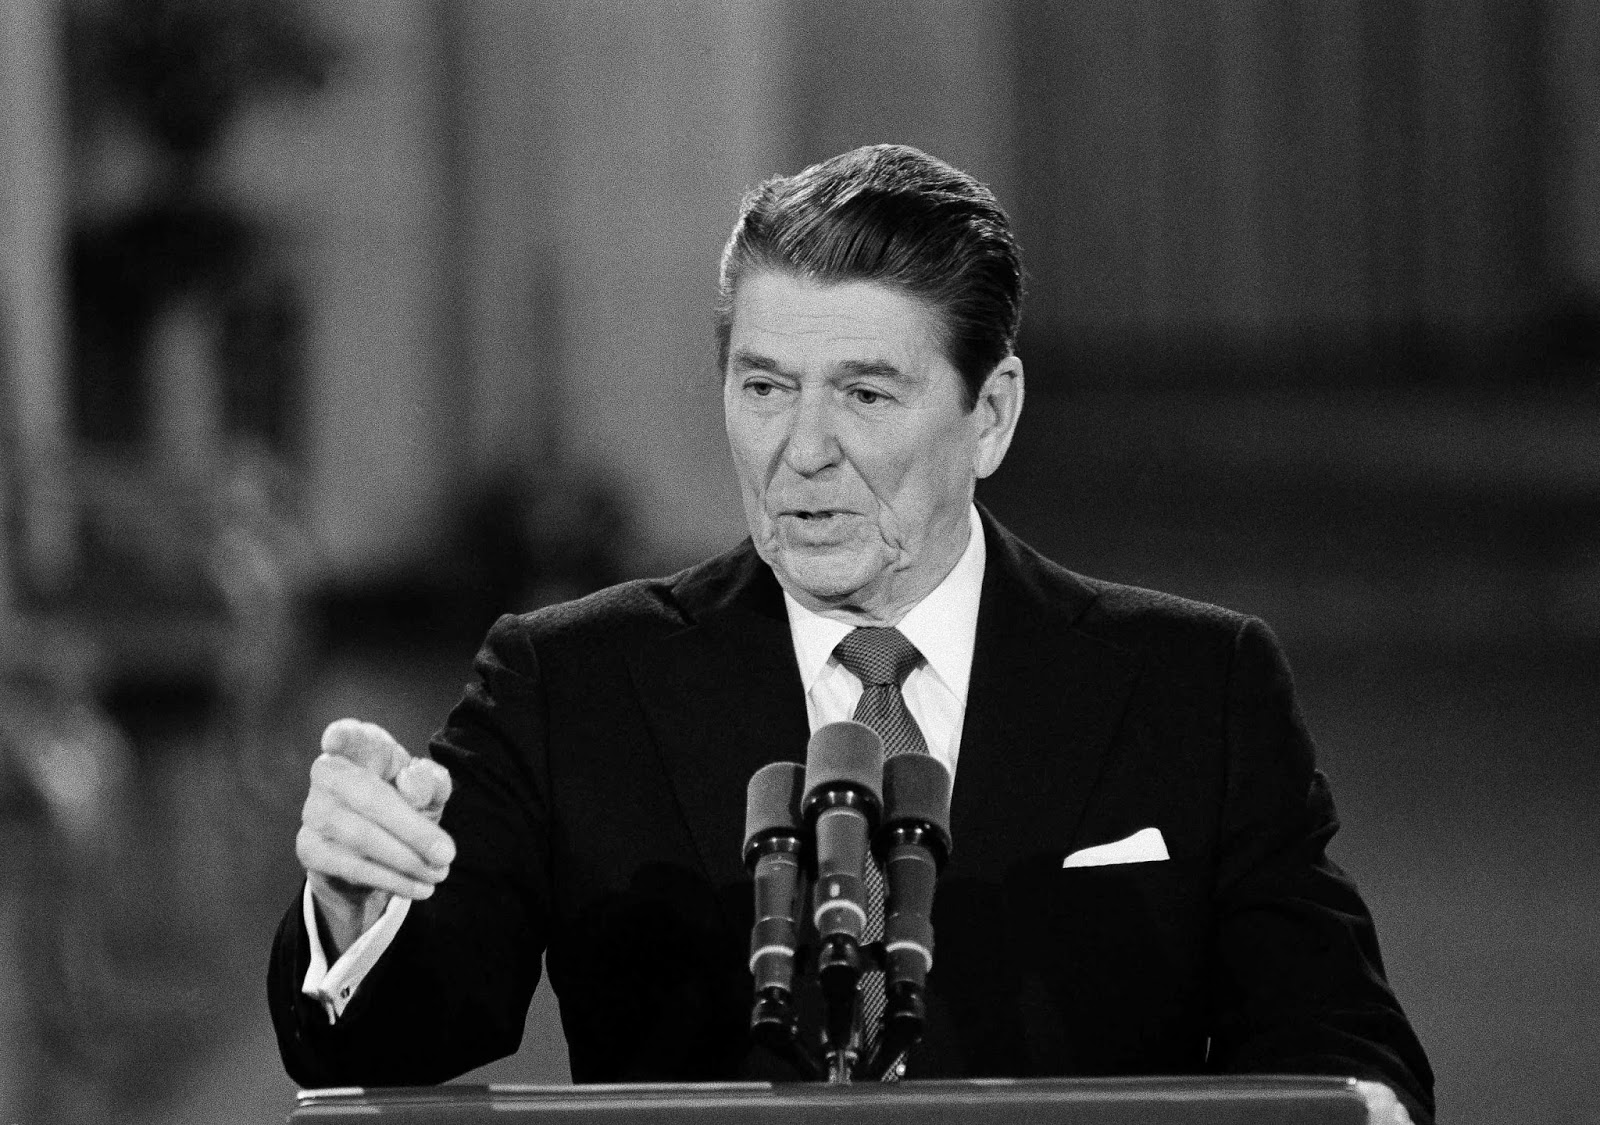 Reagan podium